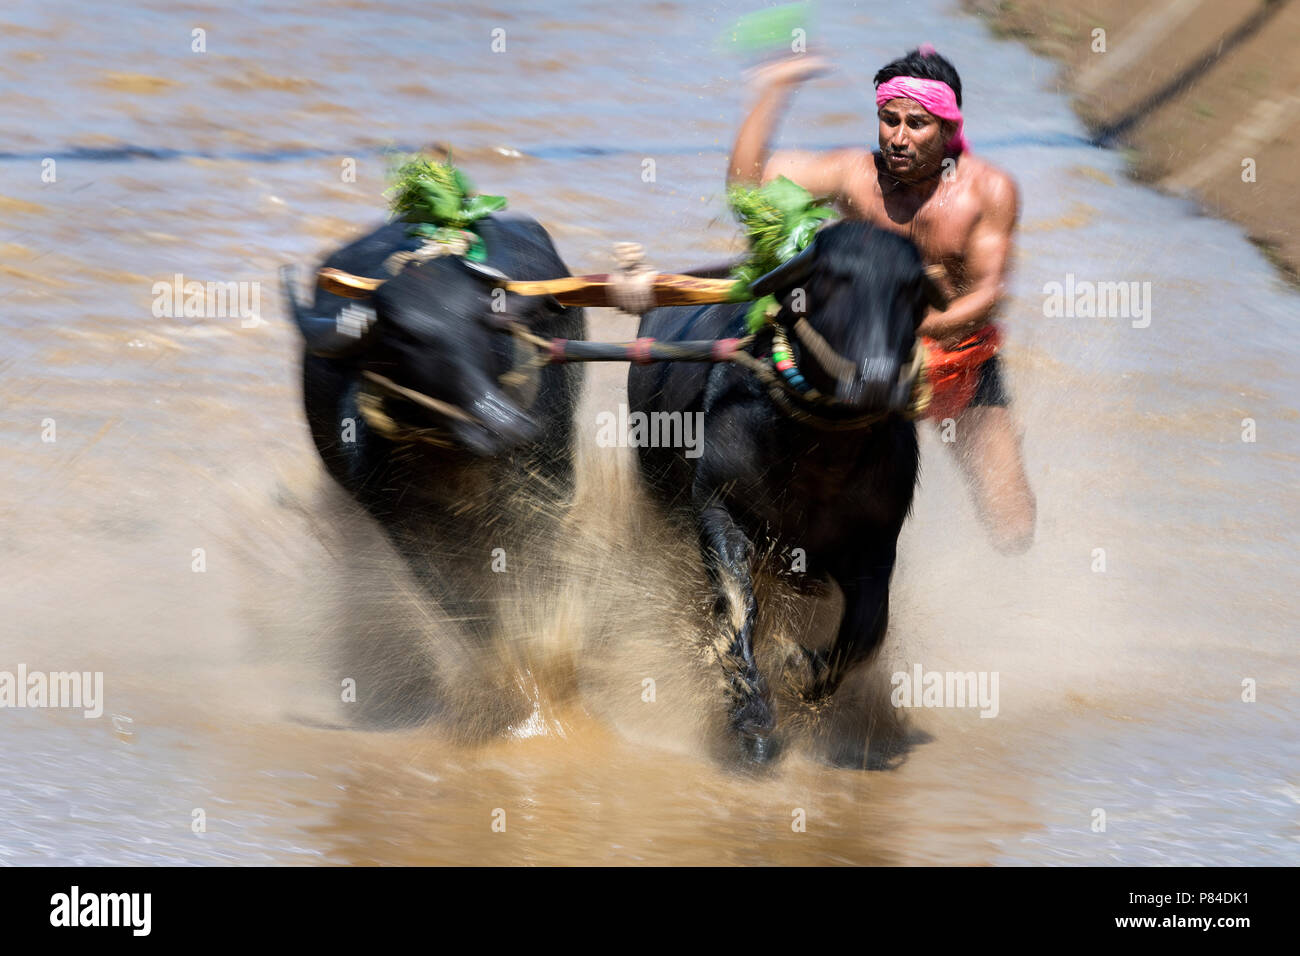 The image of Kambala festival buffalo race in Mangalore, India Stock Photo